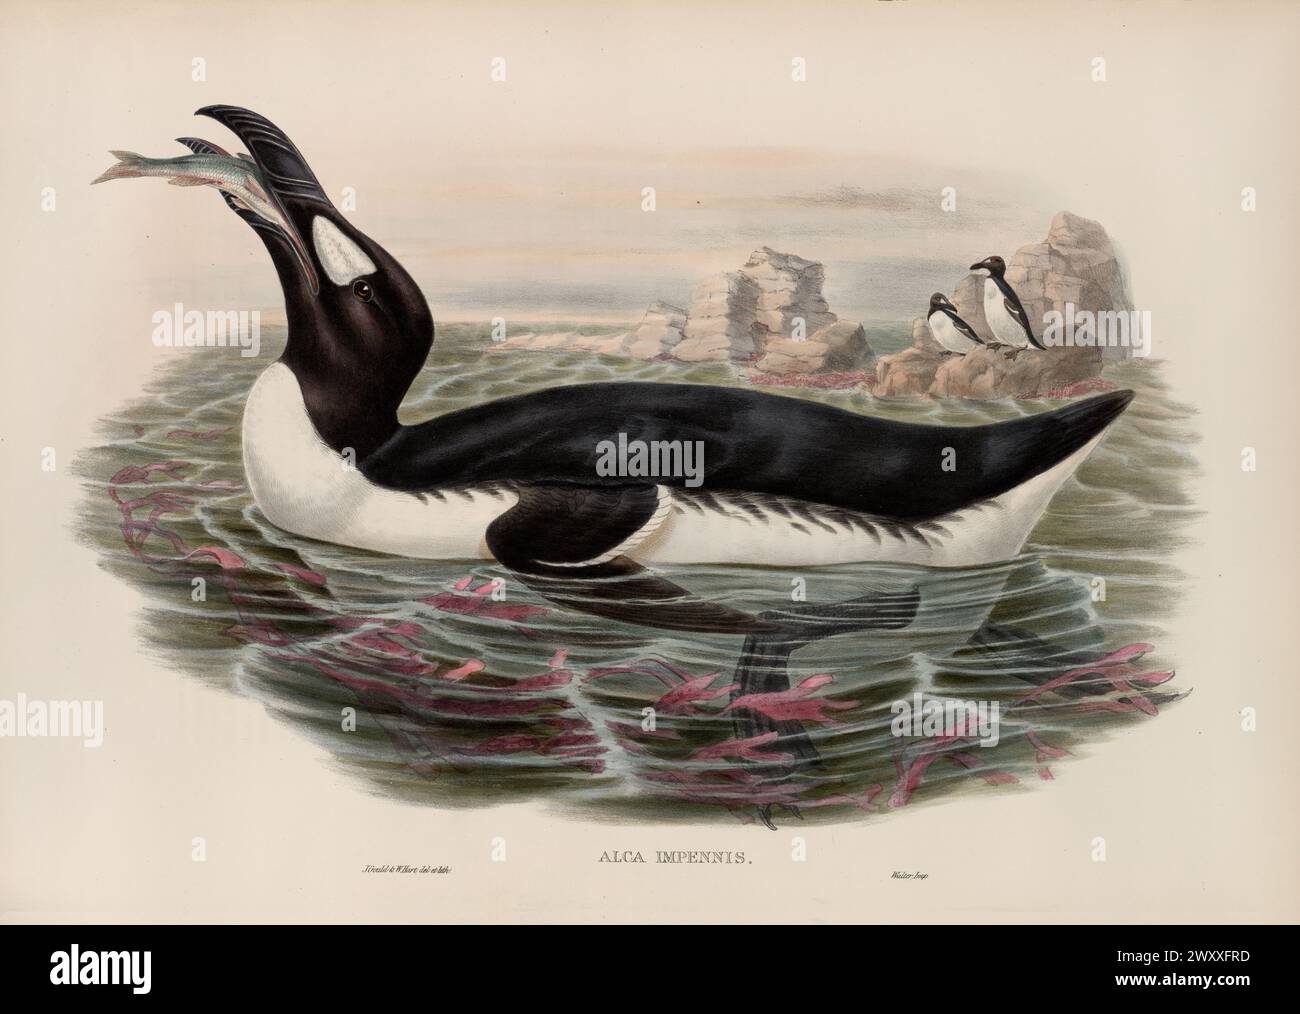 Grand Auk, Pinguinus impennis, pêche dans l'eau. Illustration de John Gould, années 1870 Banque D'Images